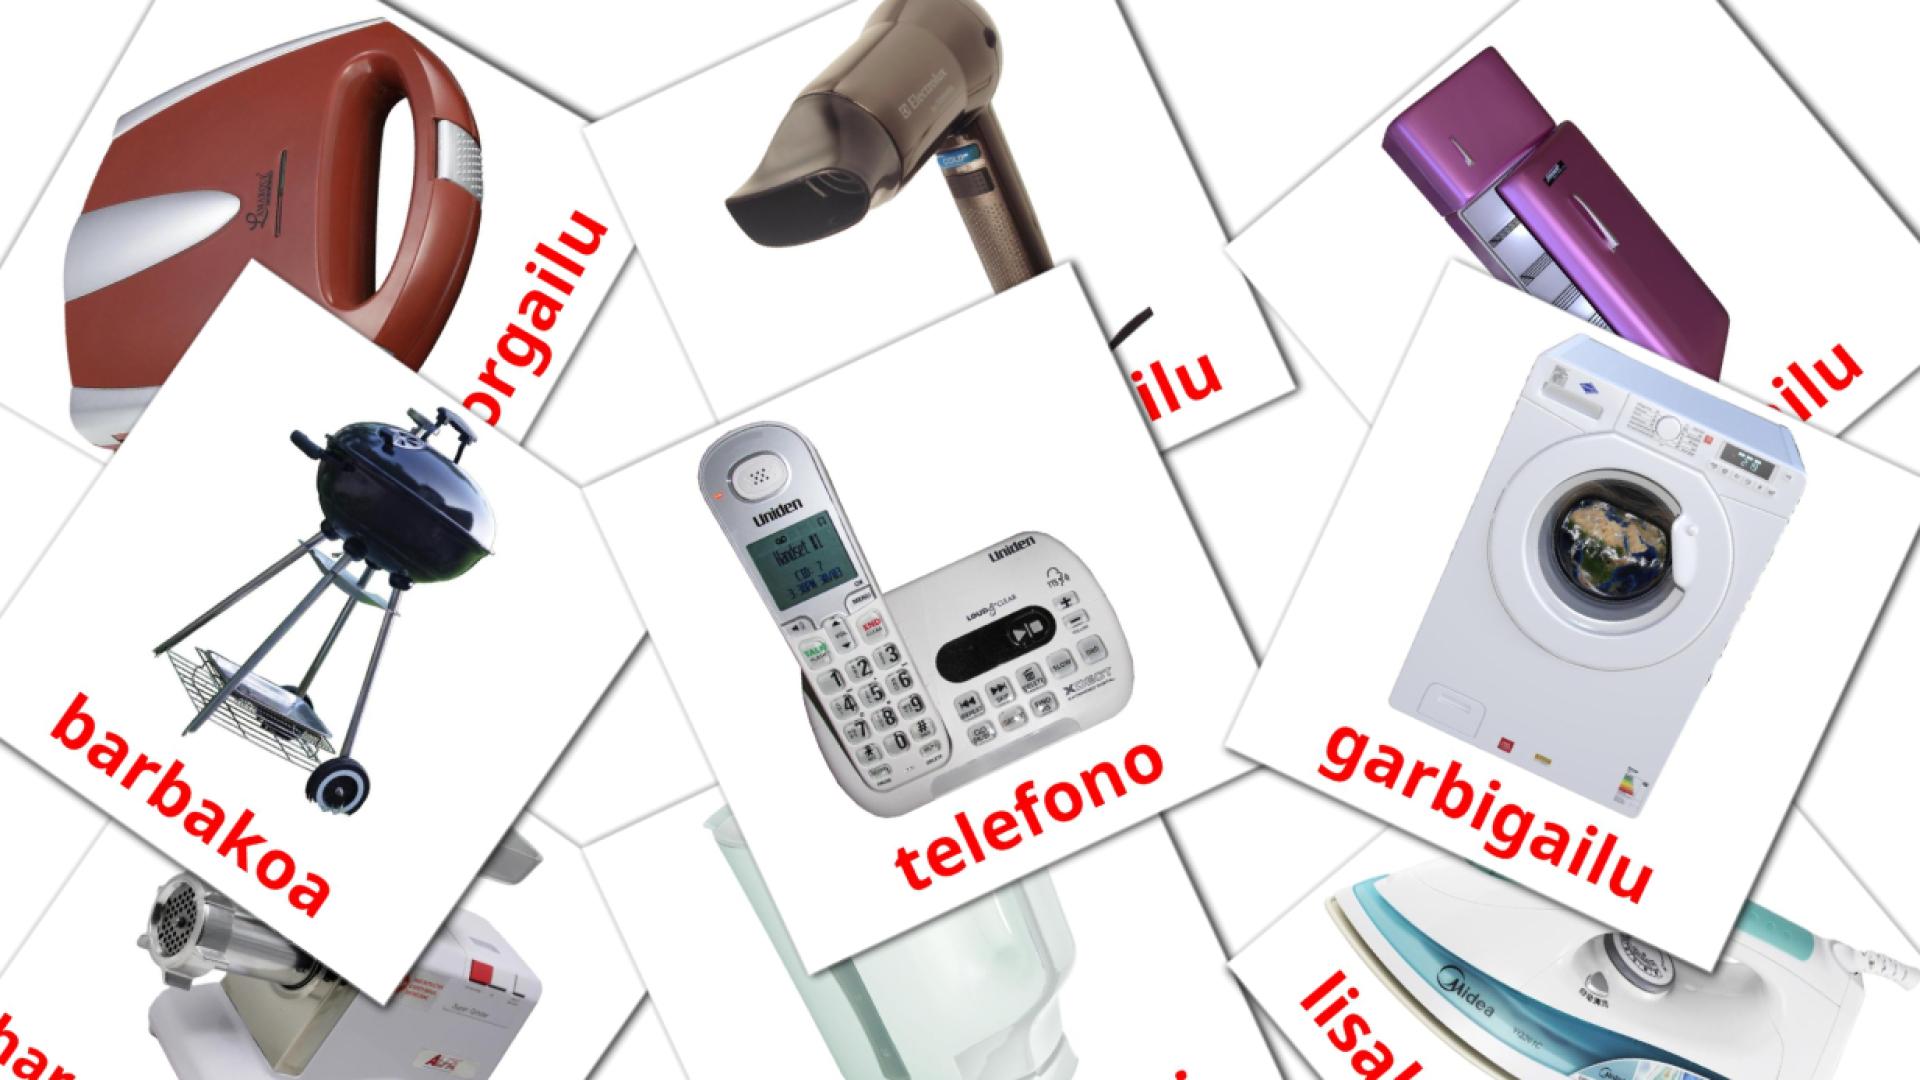 Elektronica - baskische woordenschatkaarten